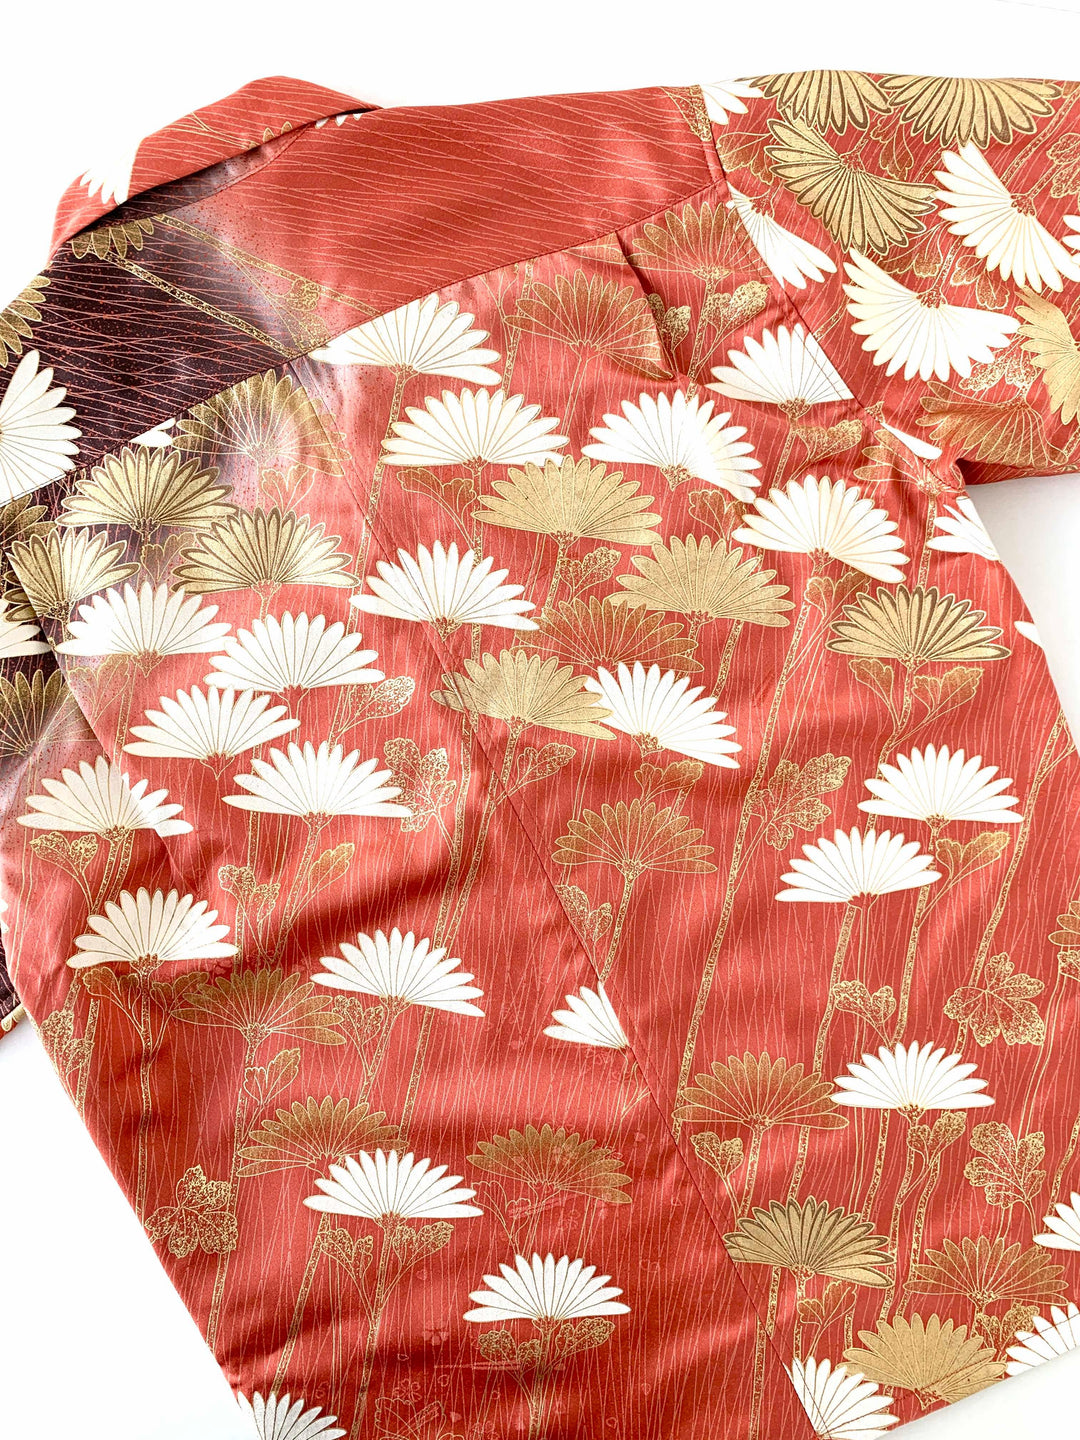 着物アロハシャツ「咲き誇る菊 B」AH100177 - 着物アロハシャツ専門店｜KIMONO-CYCLE